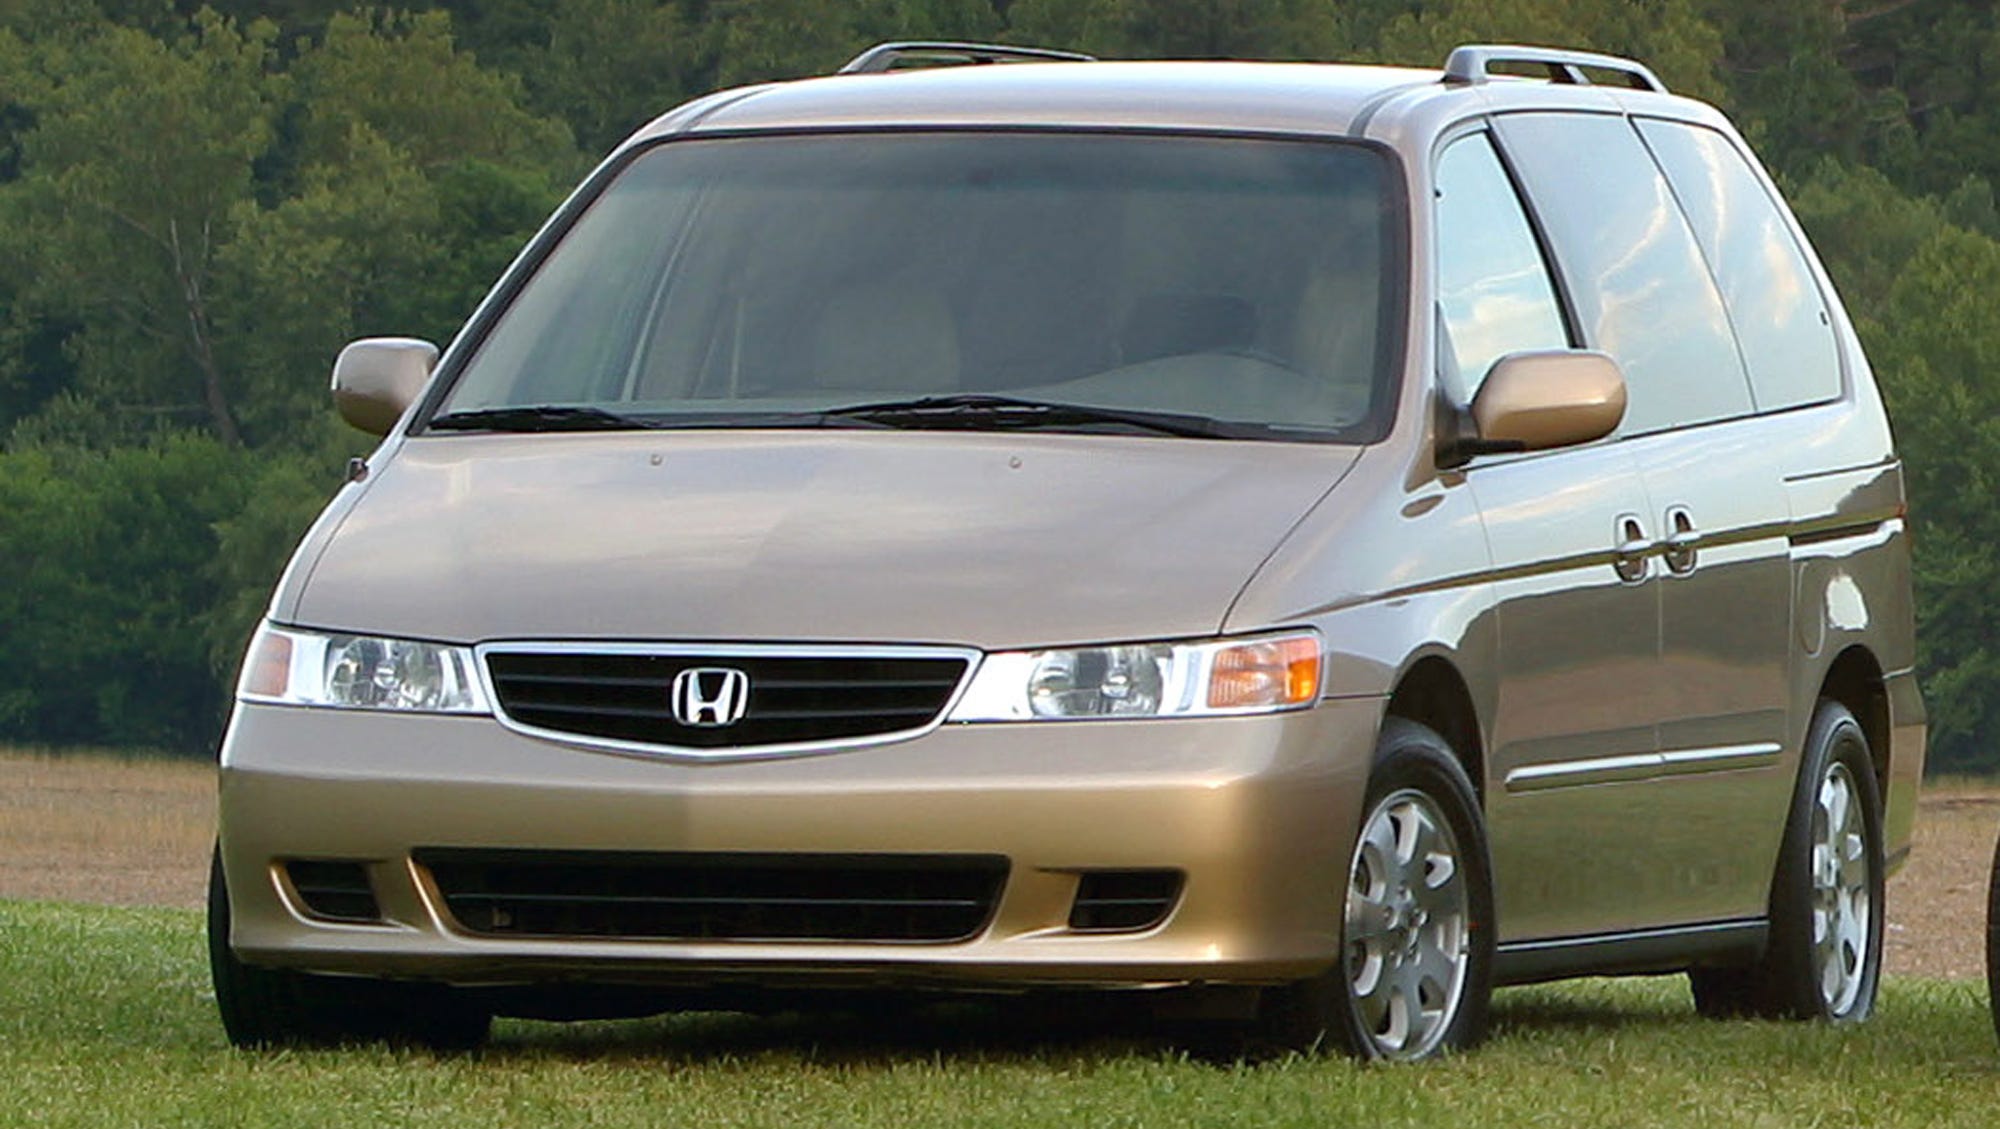 Honda recalls 374,000 Odyssey minivans, Acura SUVs